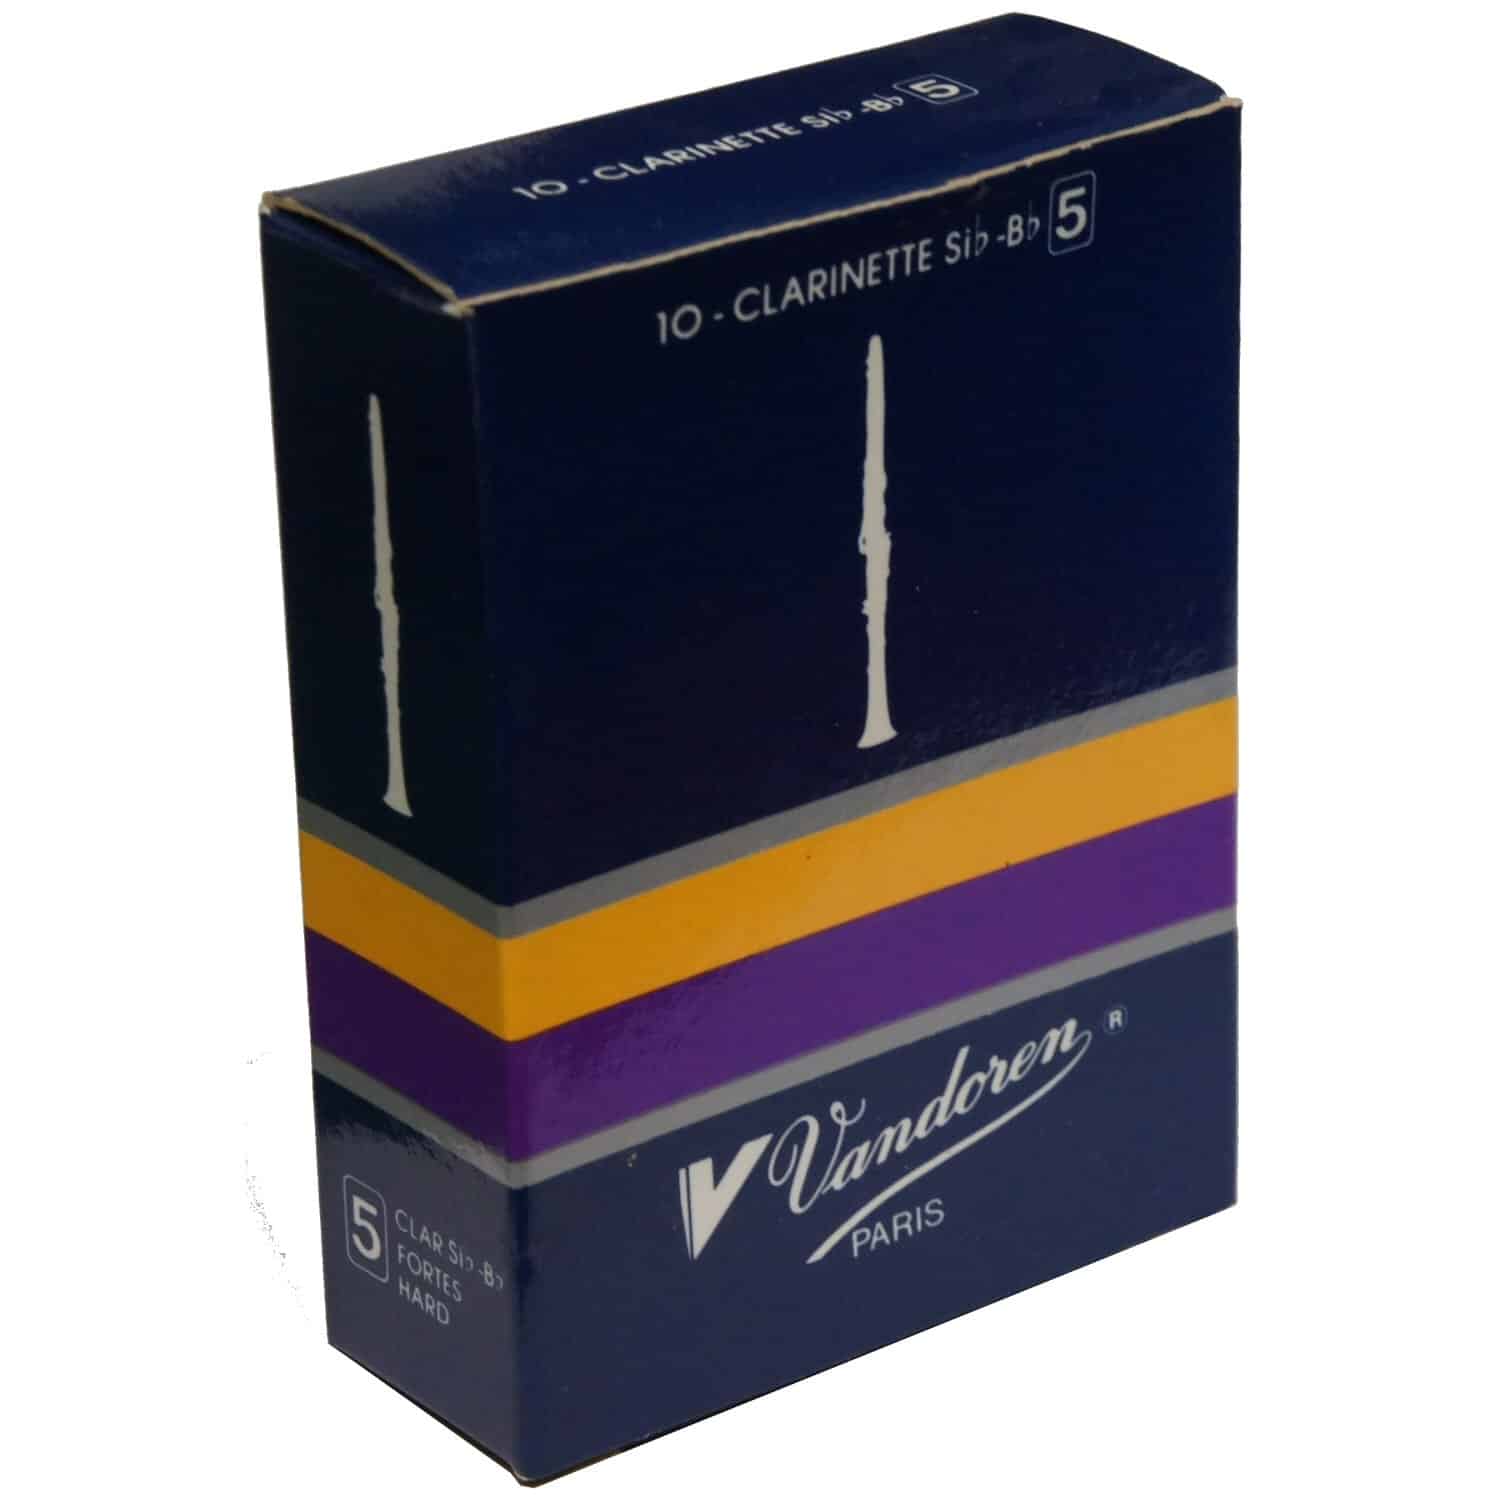 Vandoren clarinet reed strength 5 box of 10